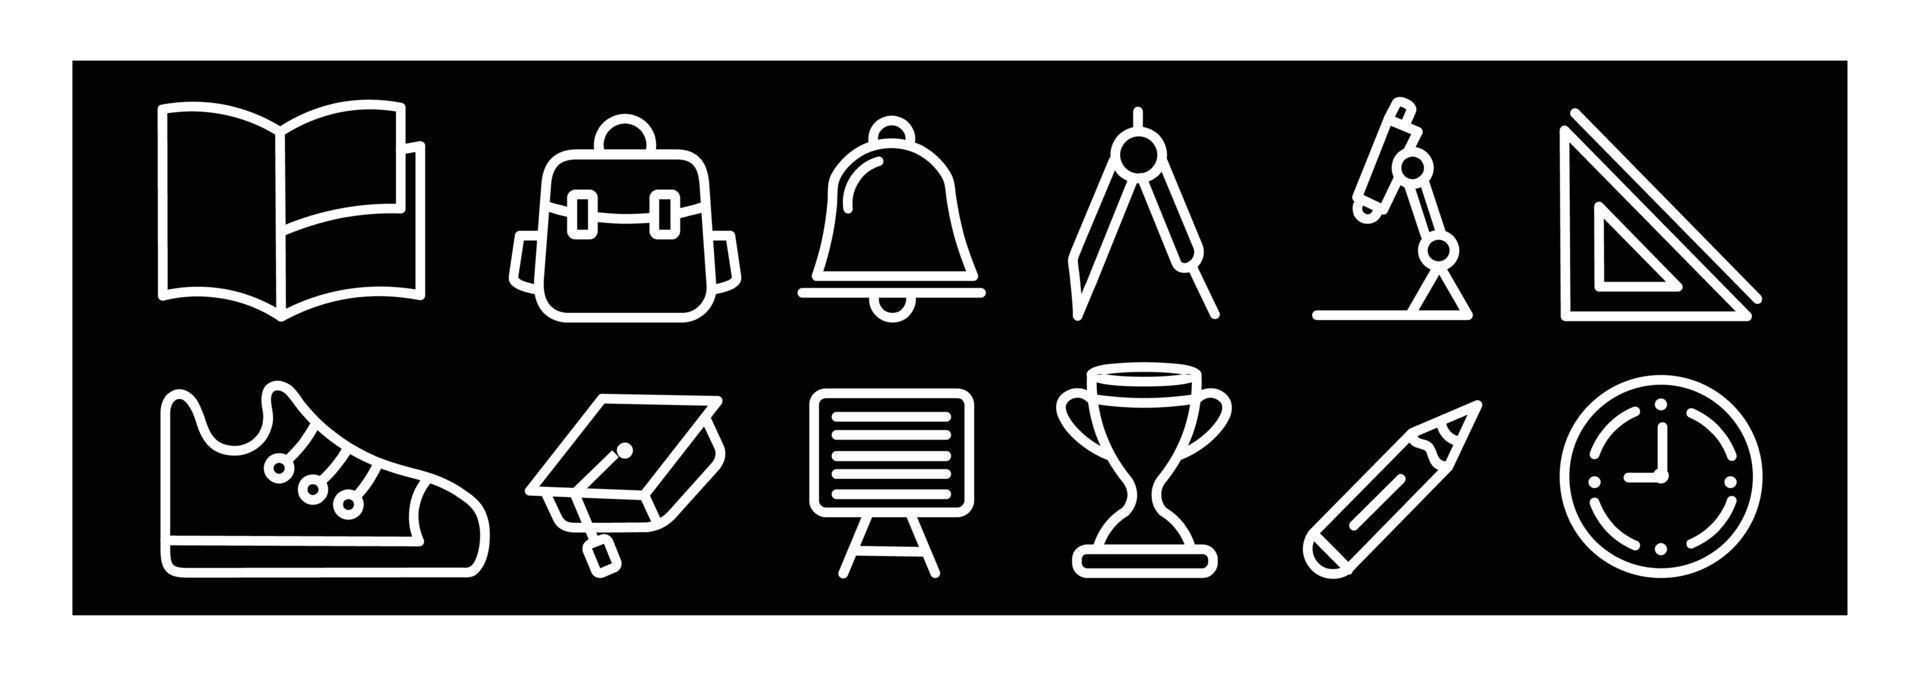 schulikonenpaket, bildung in der schule - dünne linie ikonen eingestellt. ikonen für design auf schwarzem hintergrund vektor